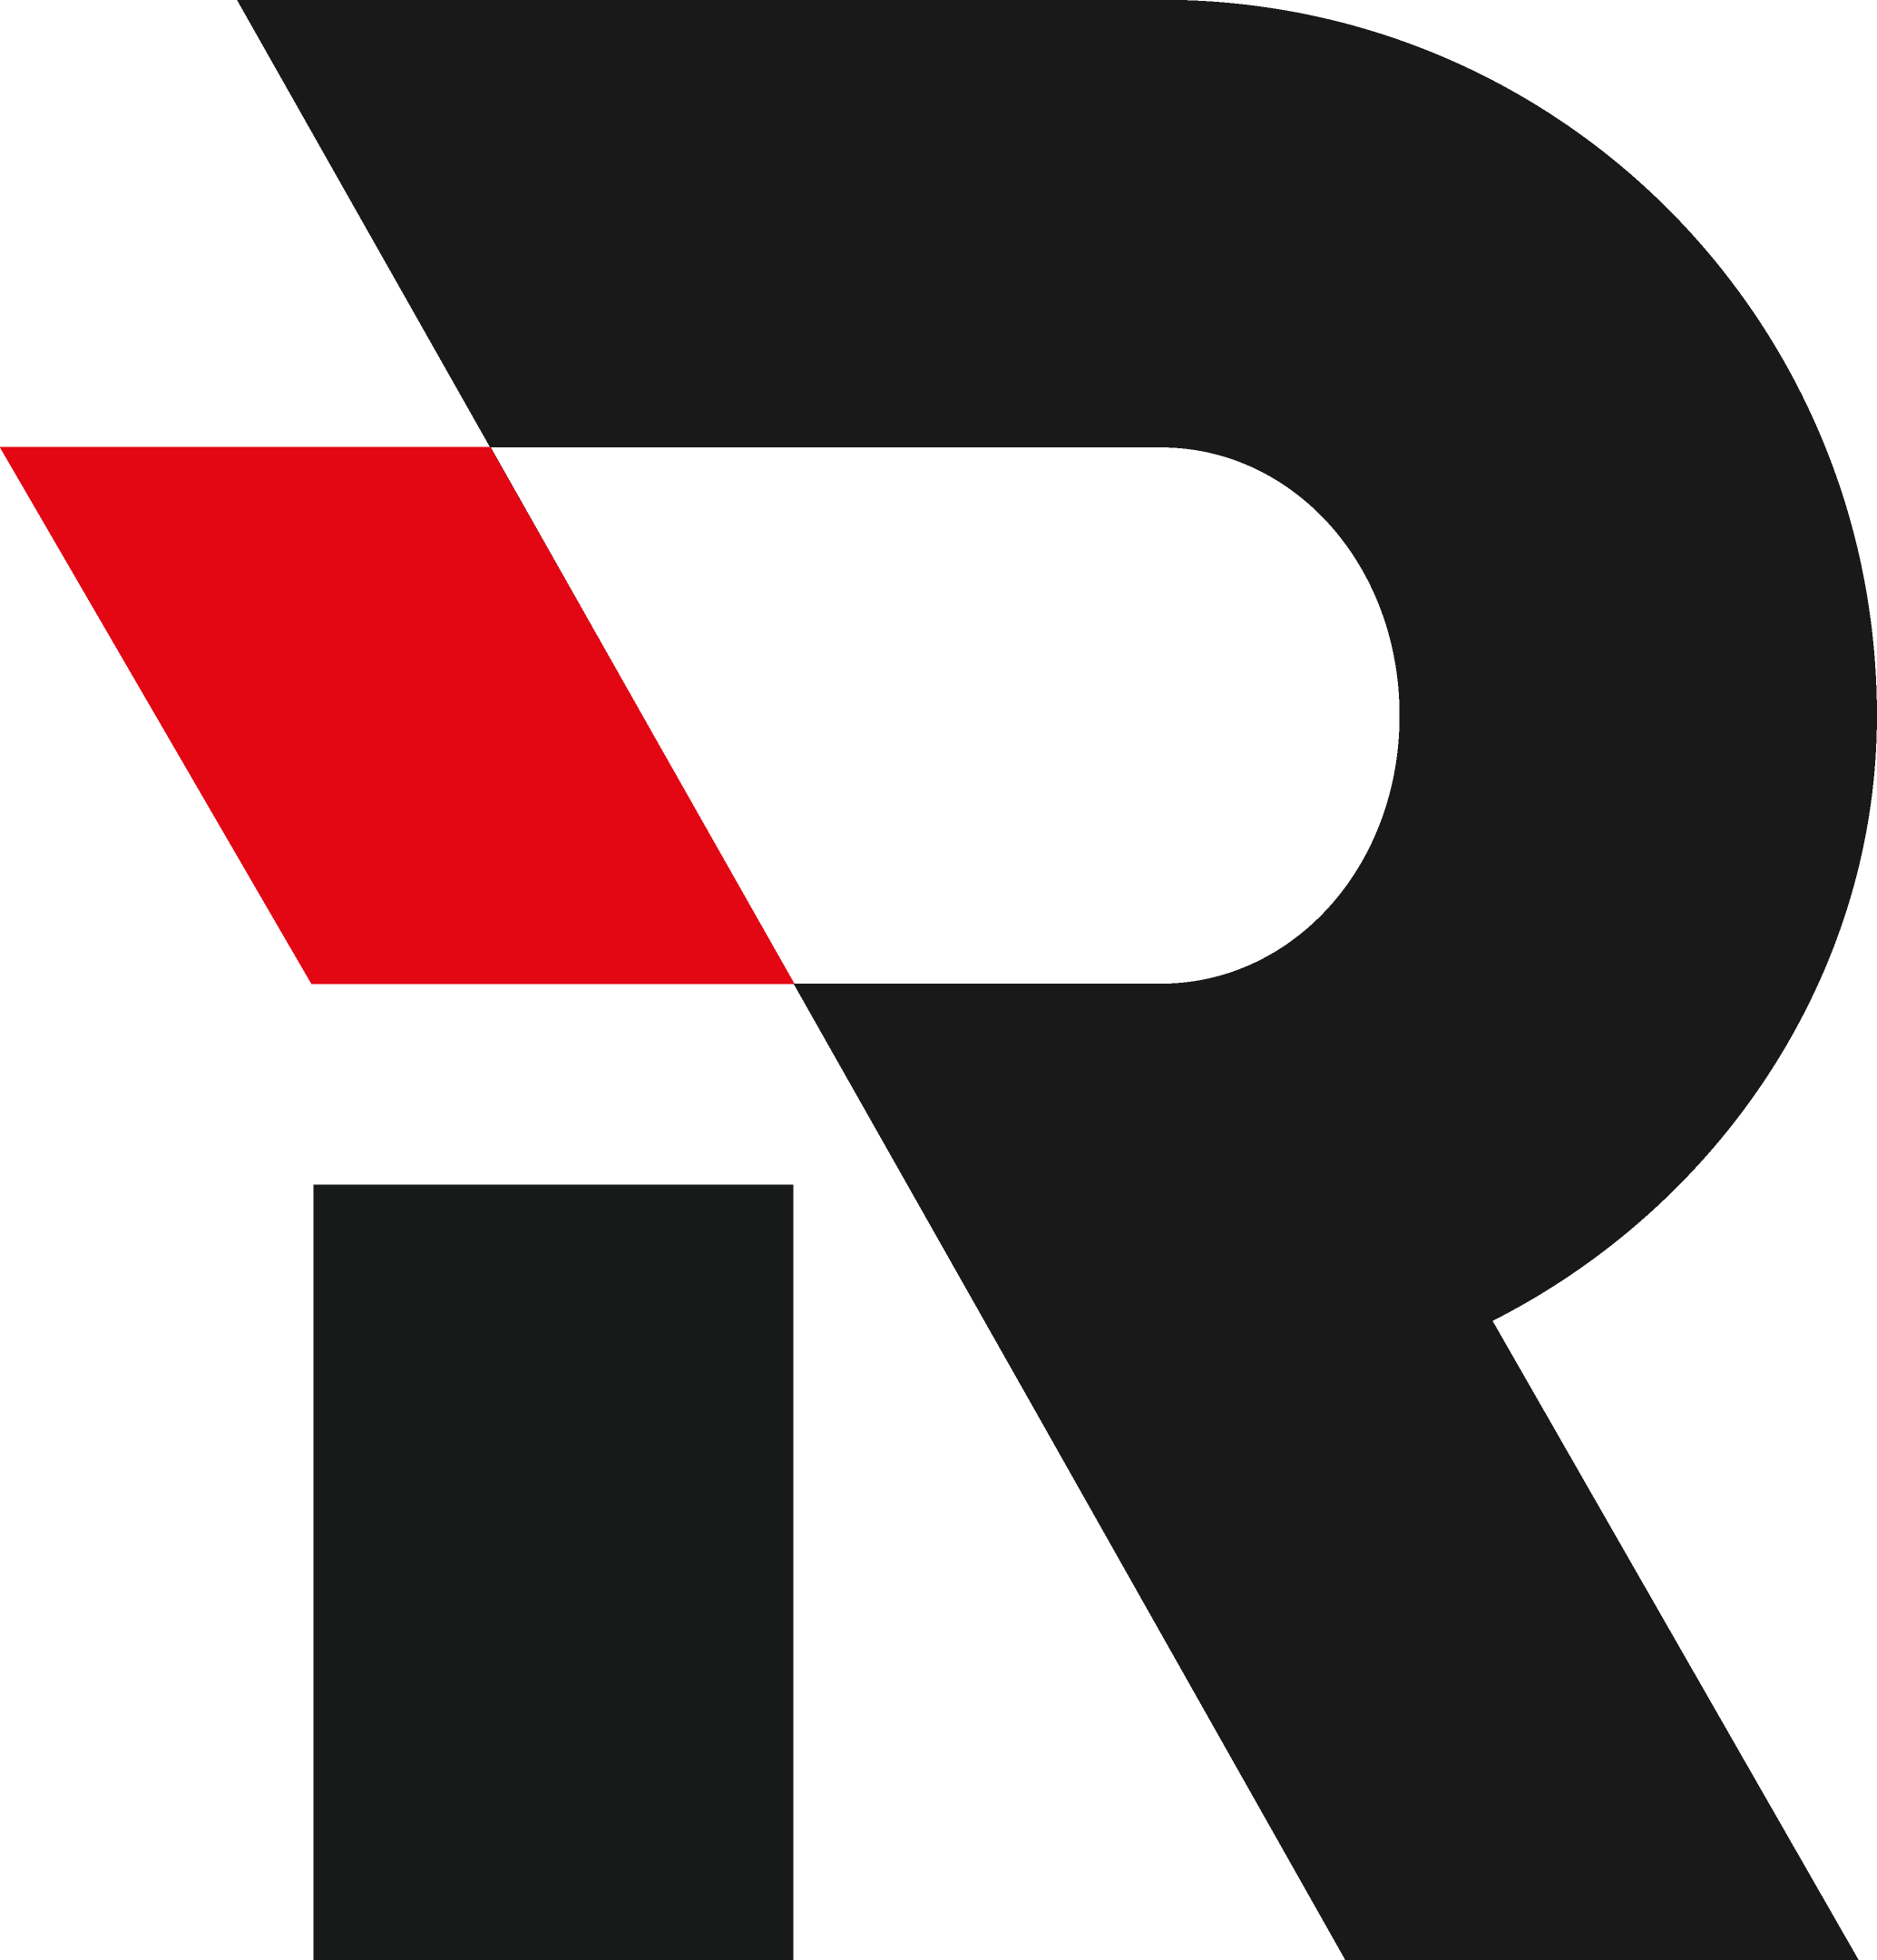 Reacton-Black-Red-Square-Logo-01